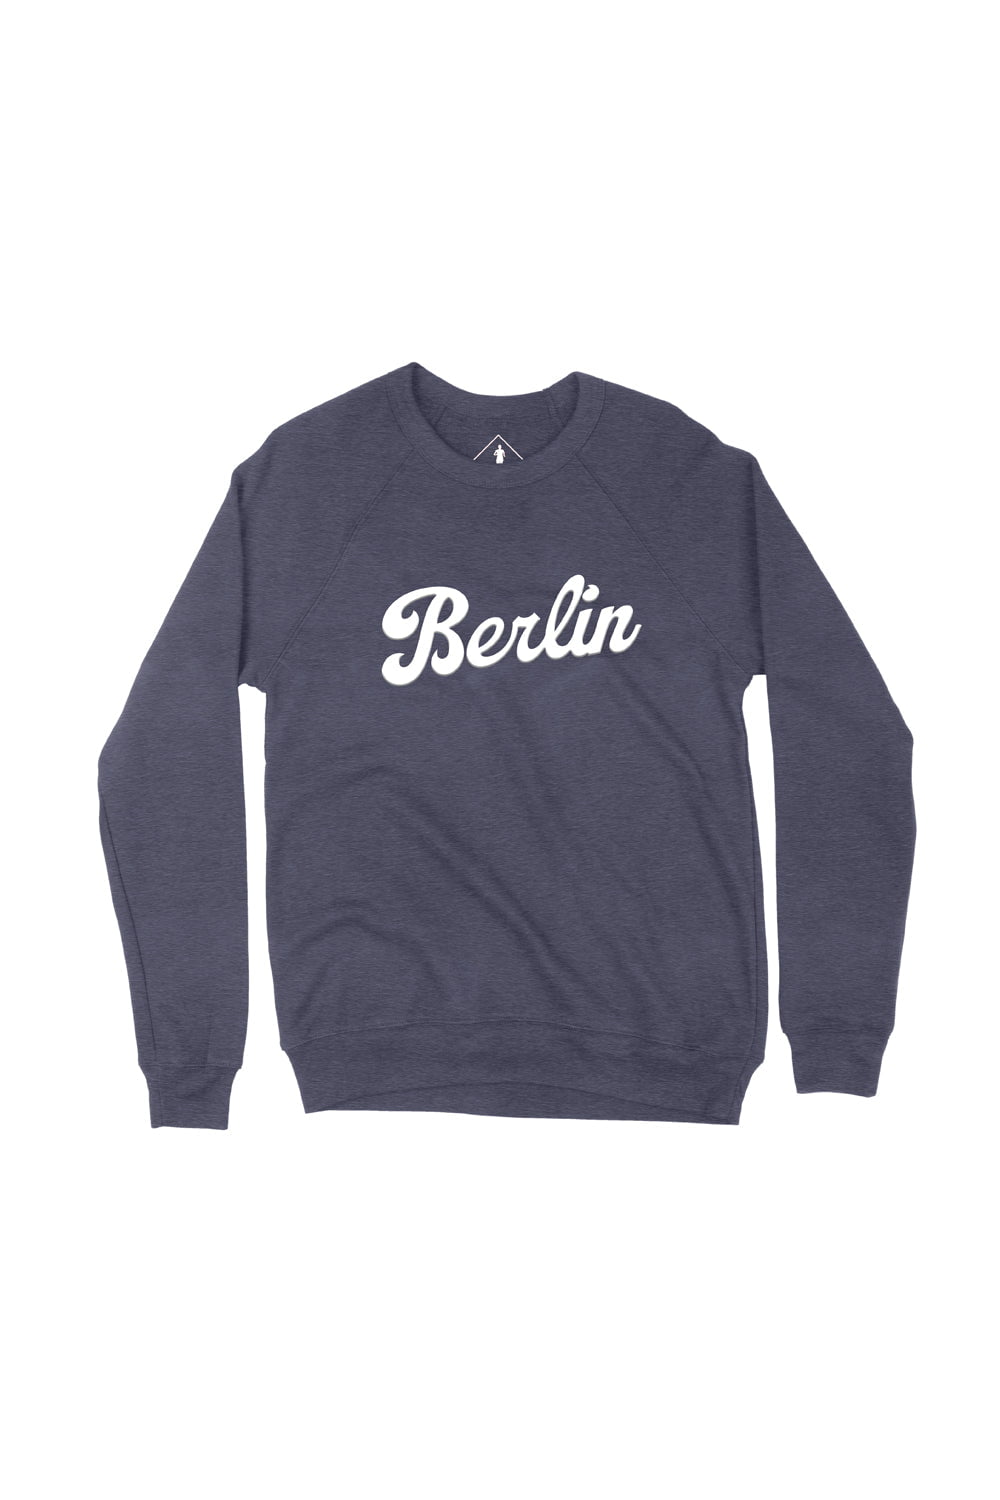 Sarah Marie Design Studio Sweatshirt Berlin Sweatshirt